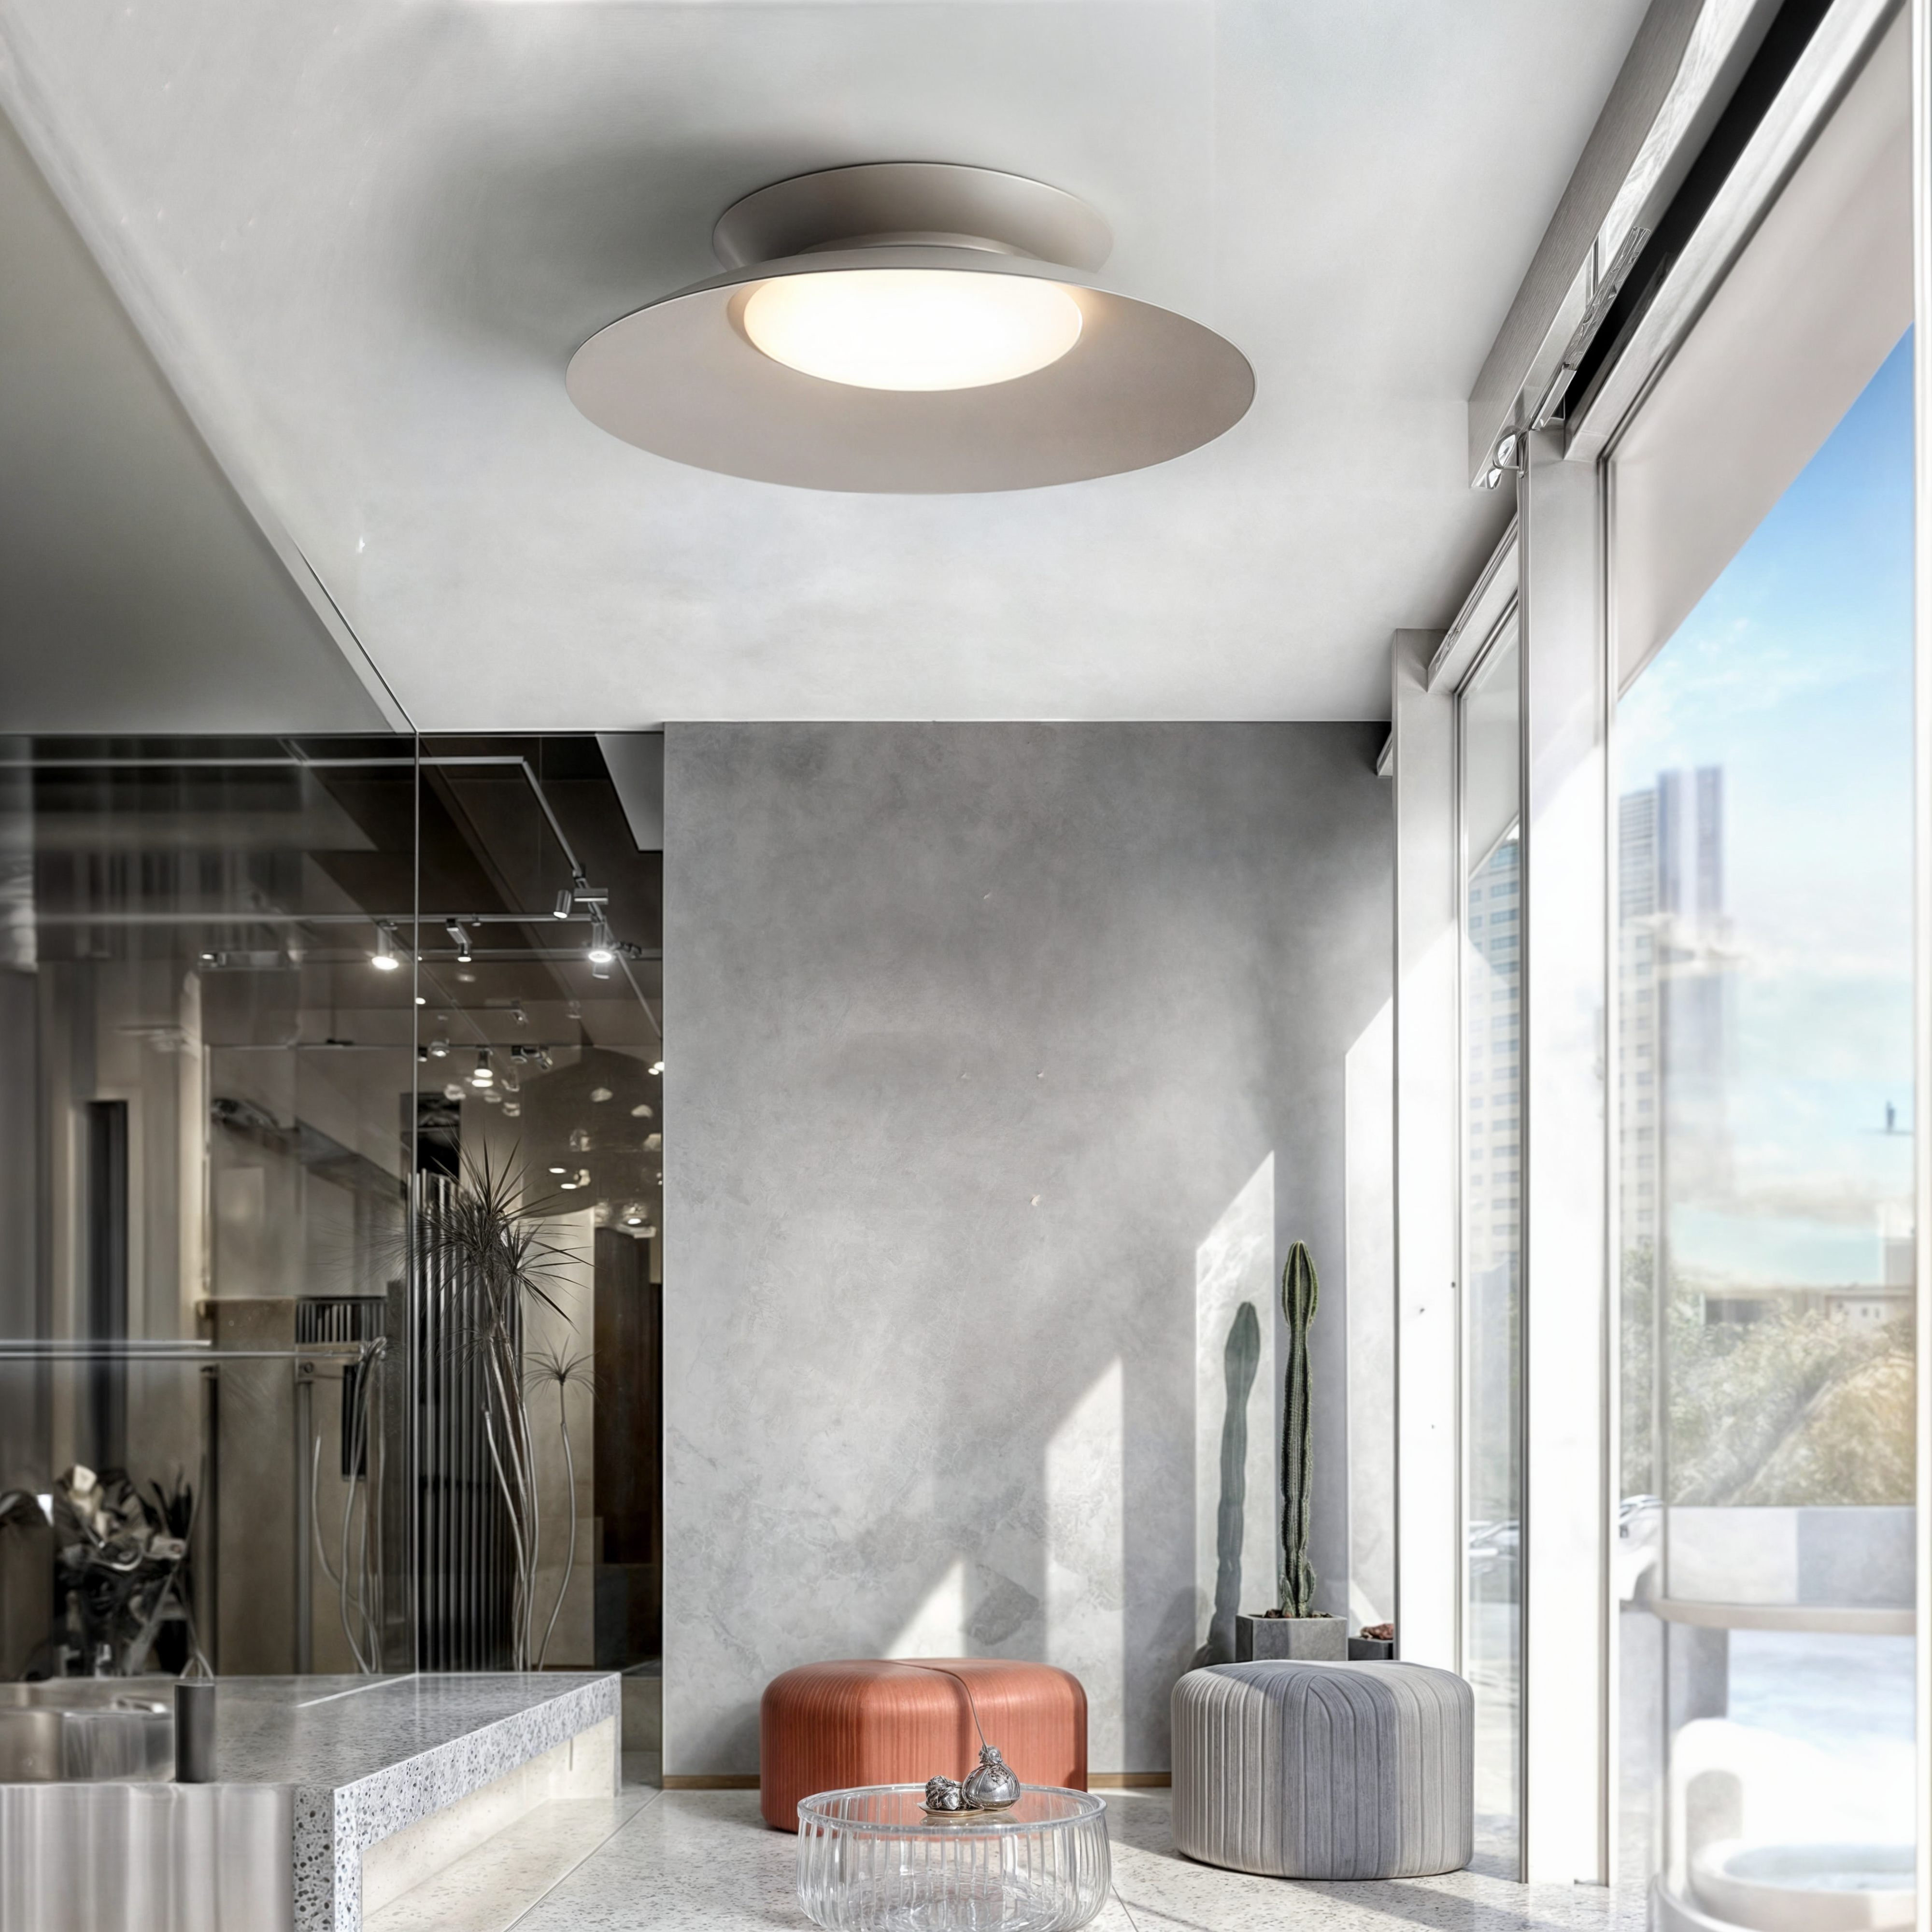 Zeitgenössische Metallkegel-Deckenleuchte, integrierte LED, dunkelgrau/weißgrau/graublau, galvanisiert, innen, moderner Stil, Küche, Esszimmer, Schlafzimmer